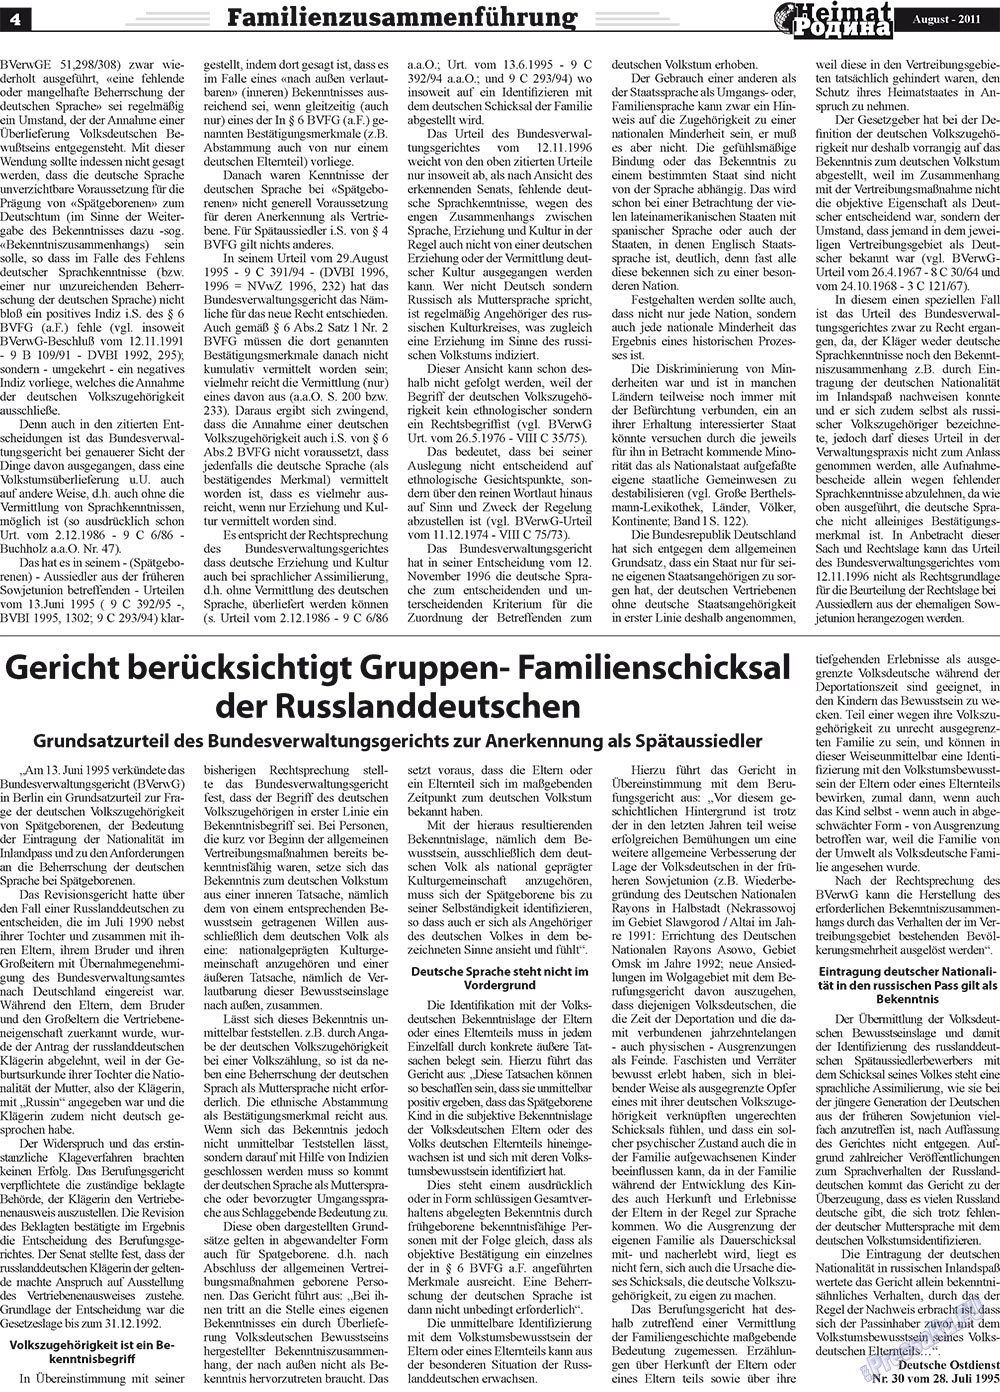 Heimat-Родина (Zeitung). 2011 Jahr, Ausgabe 8, Seite 4